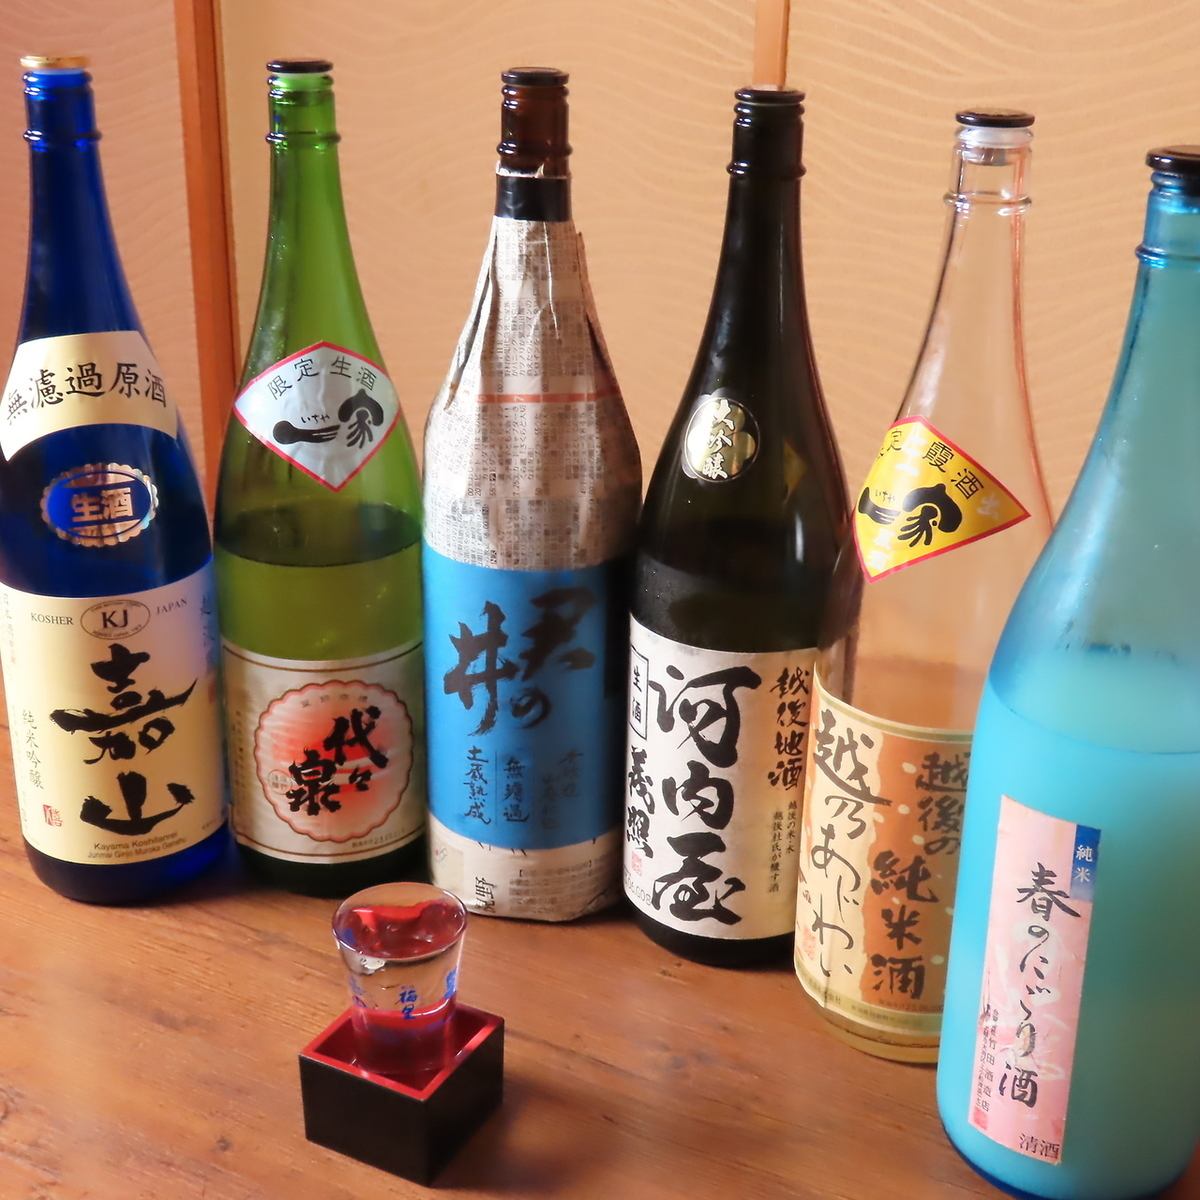 說到魚類菜餚，就不得不提日本酒了。常備有約30種新潟當地酒。